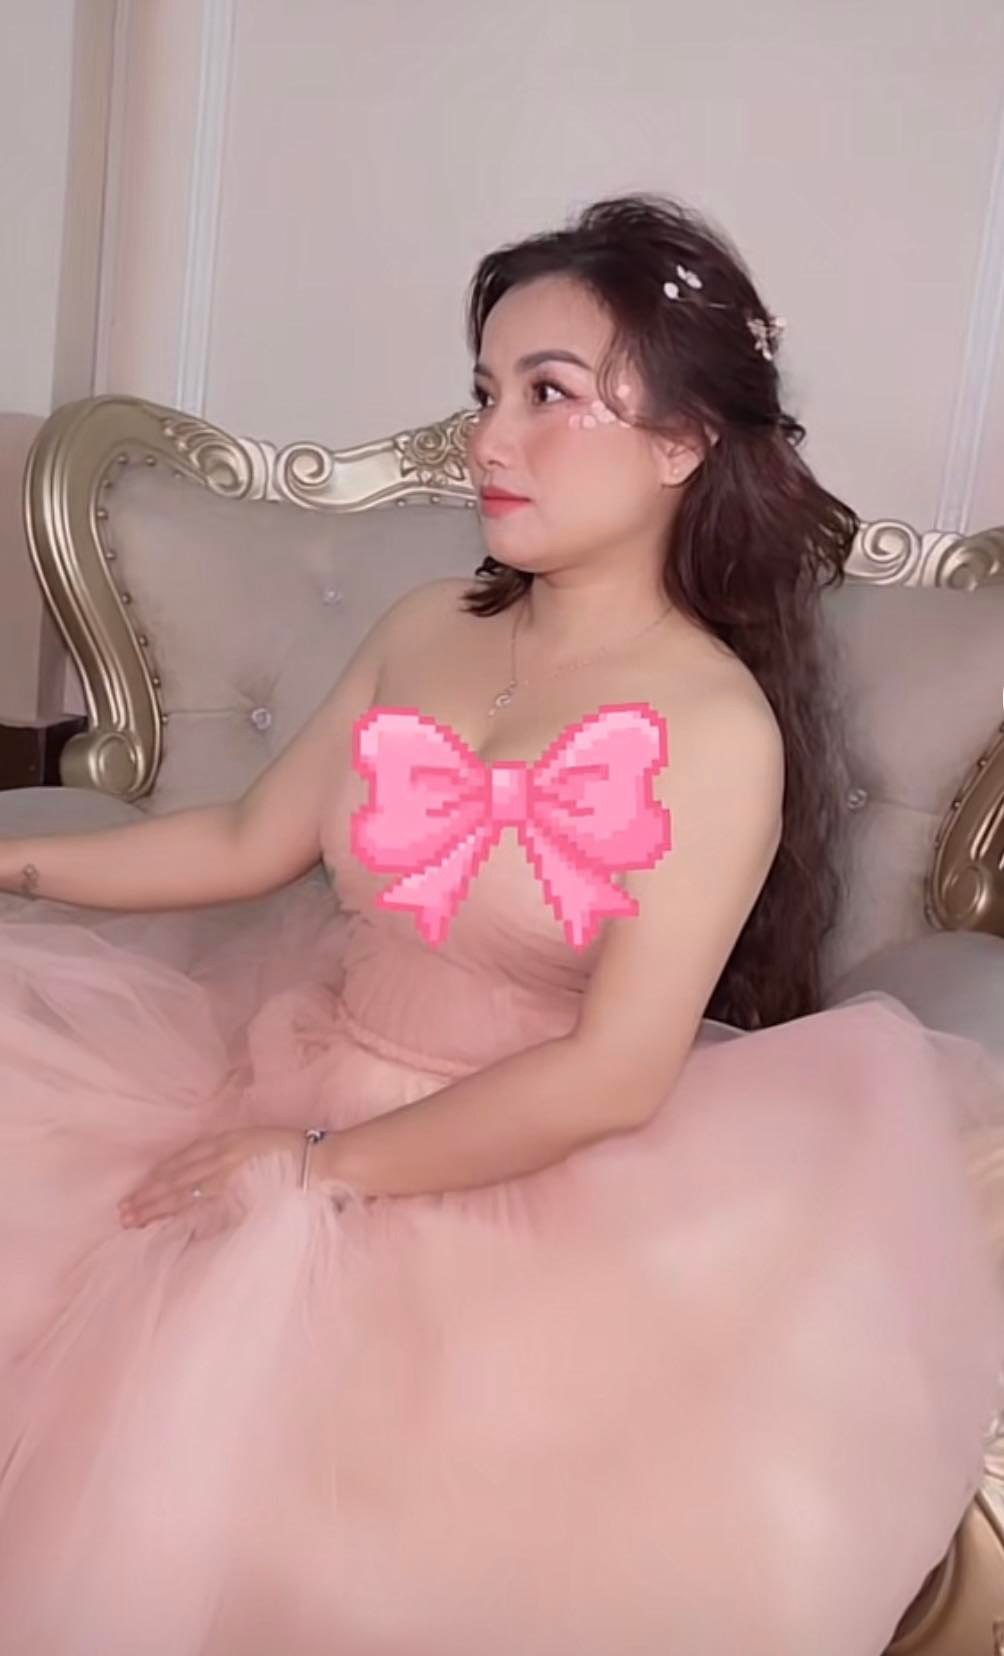 Quỳnh Trần JP diện váy hồng điệu đà, được khen hết lời sau khi chi tiền khủng để 'dao kéo' - ảnh 4